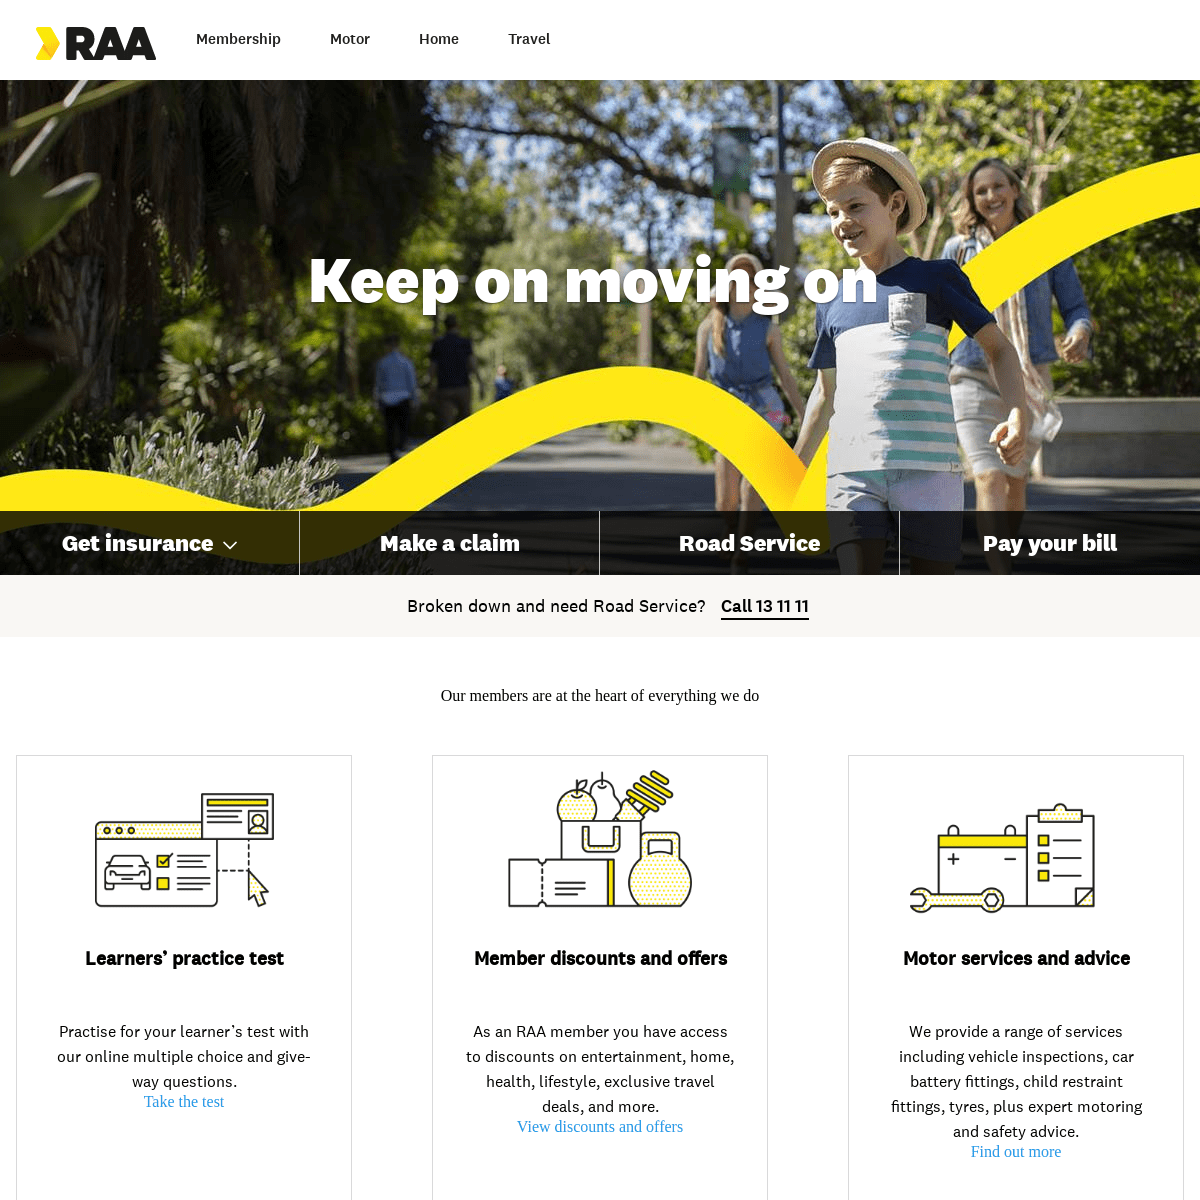 A complete backup of raa.com.au